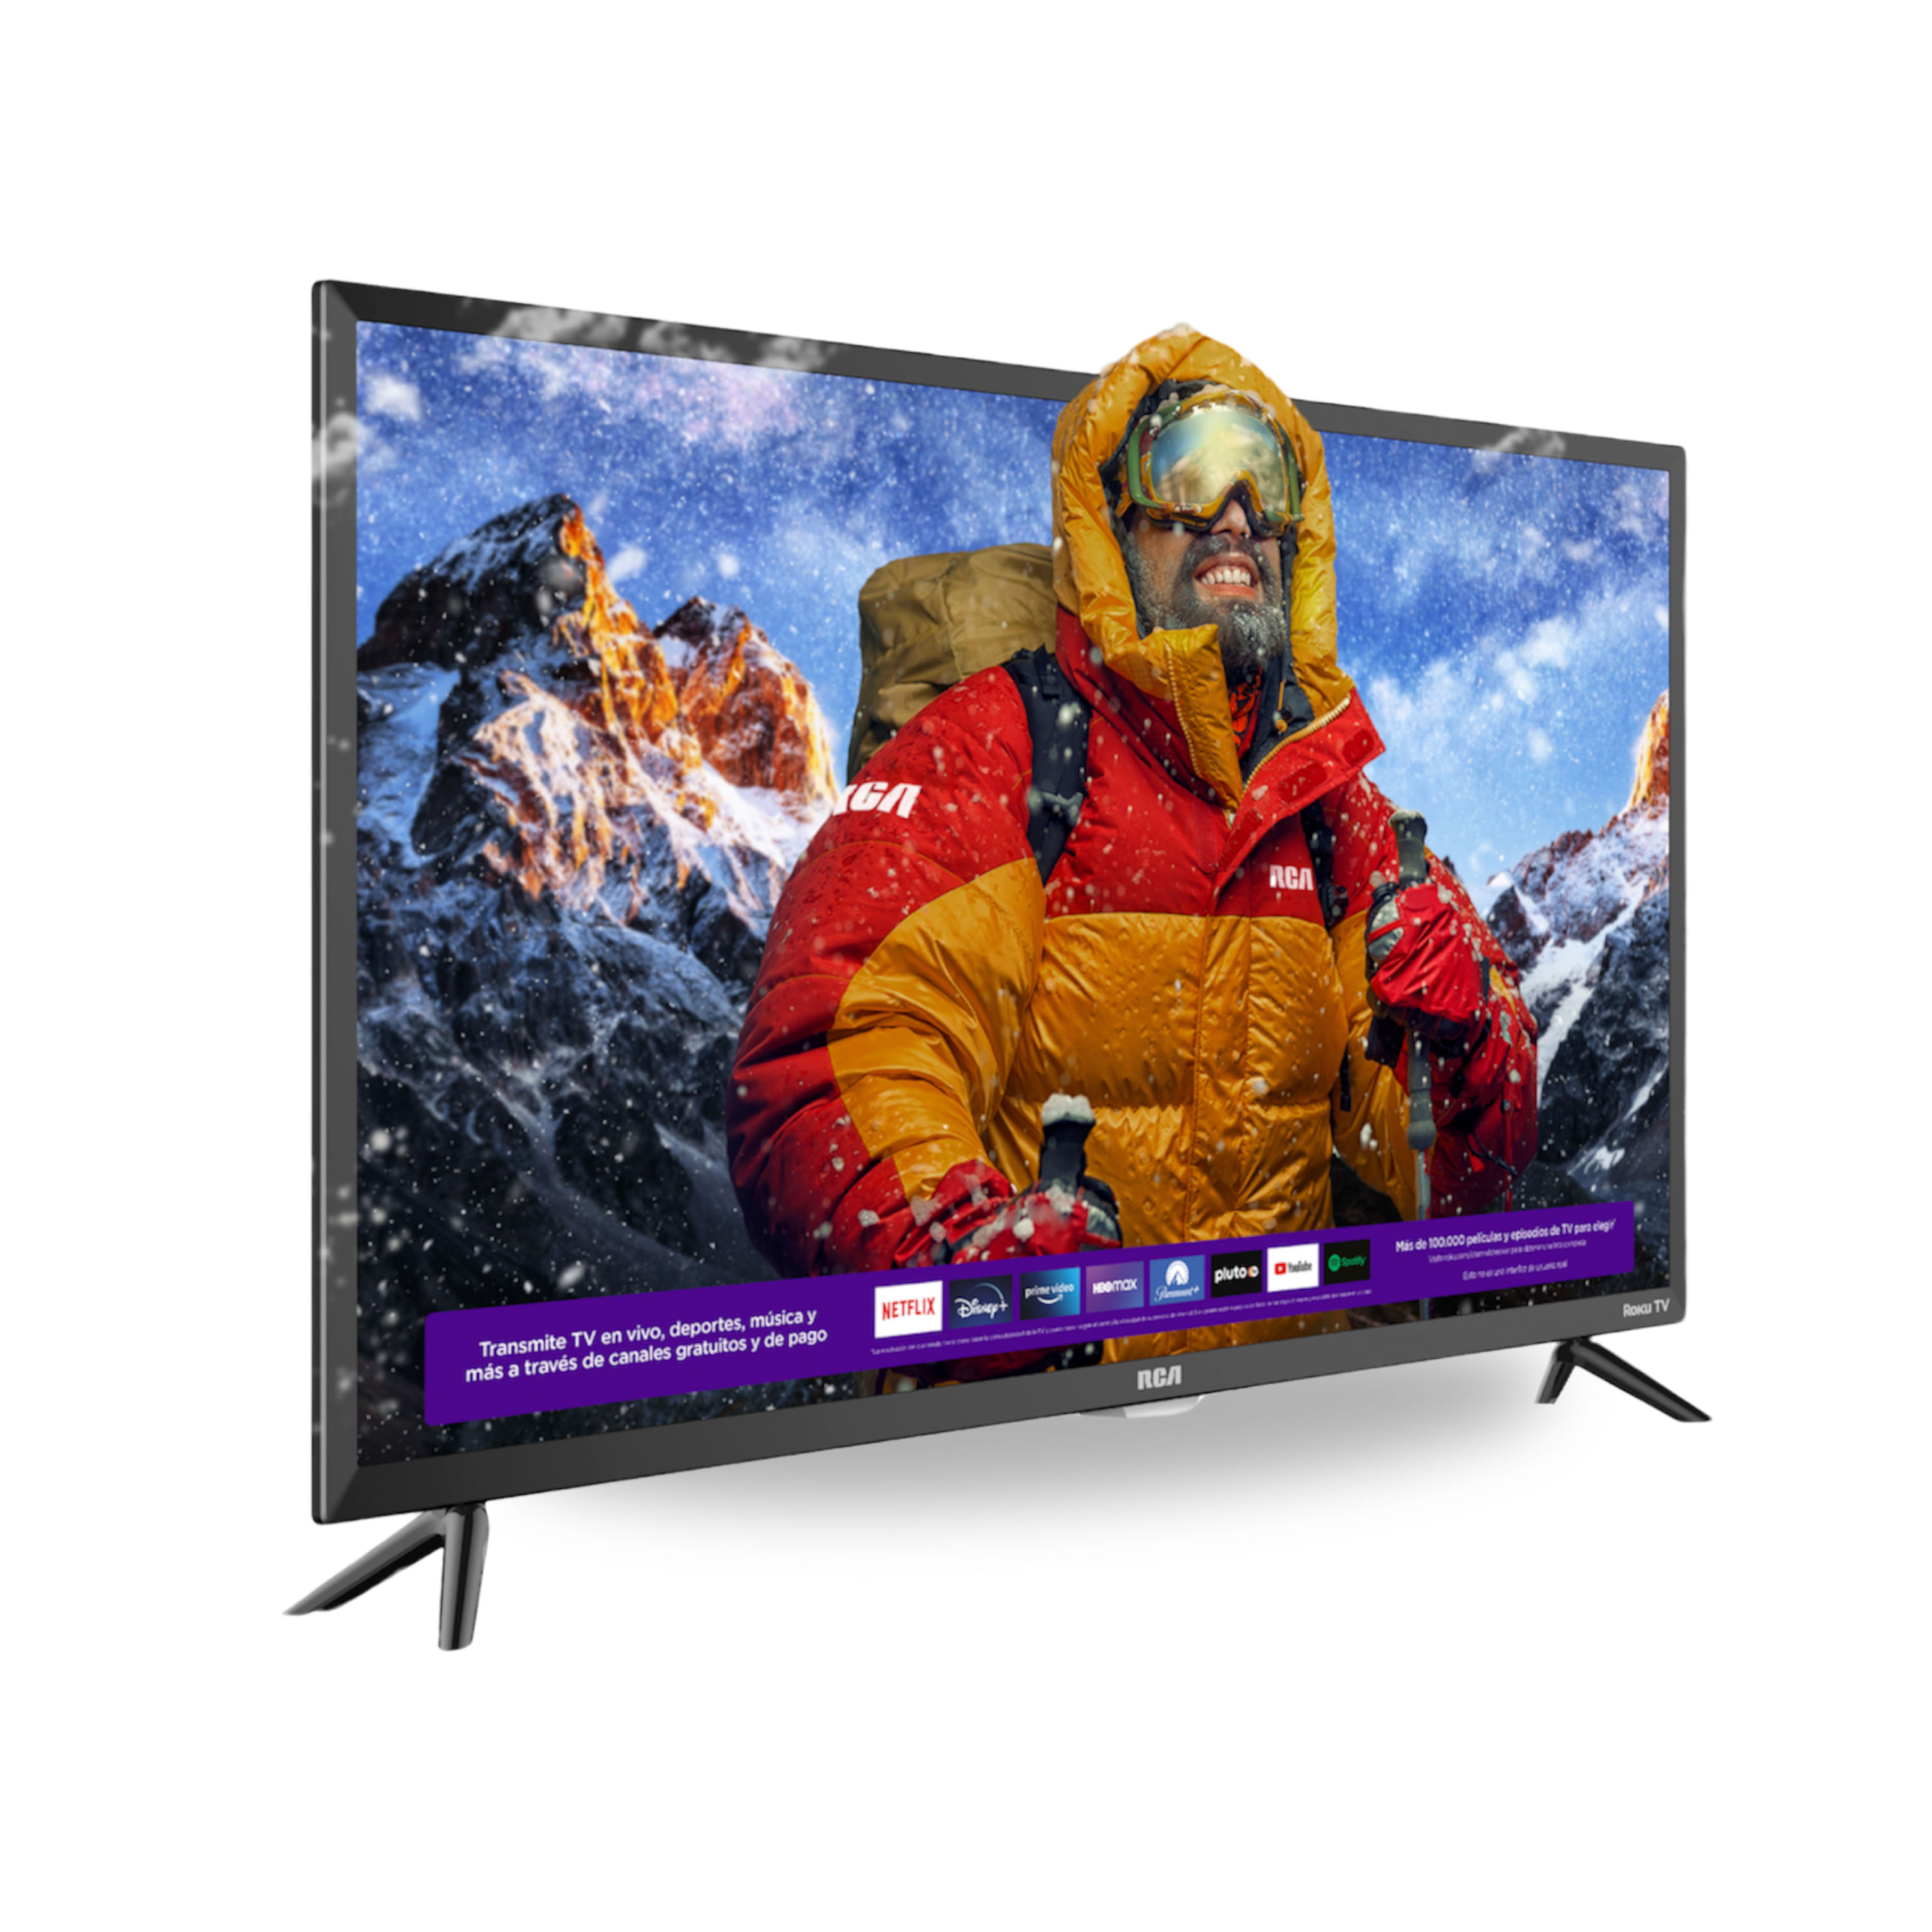 Comprar Pantalla Smart TV RCA Roku Led De 32 Pulgadas Modelo:Rc32Rk, Walmart Guatemala - Maxi Despensa